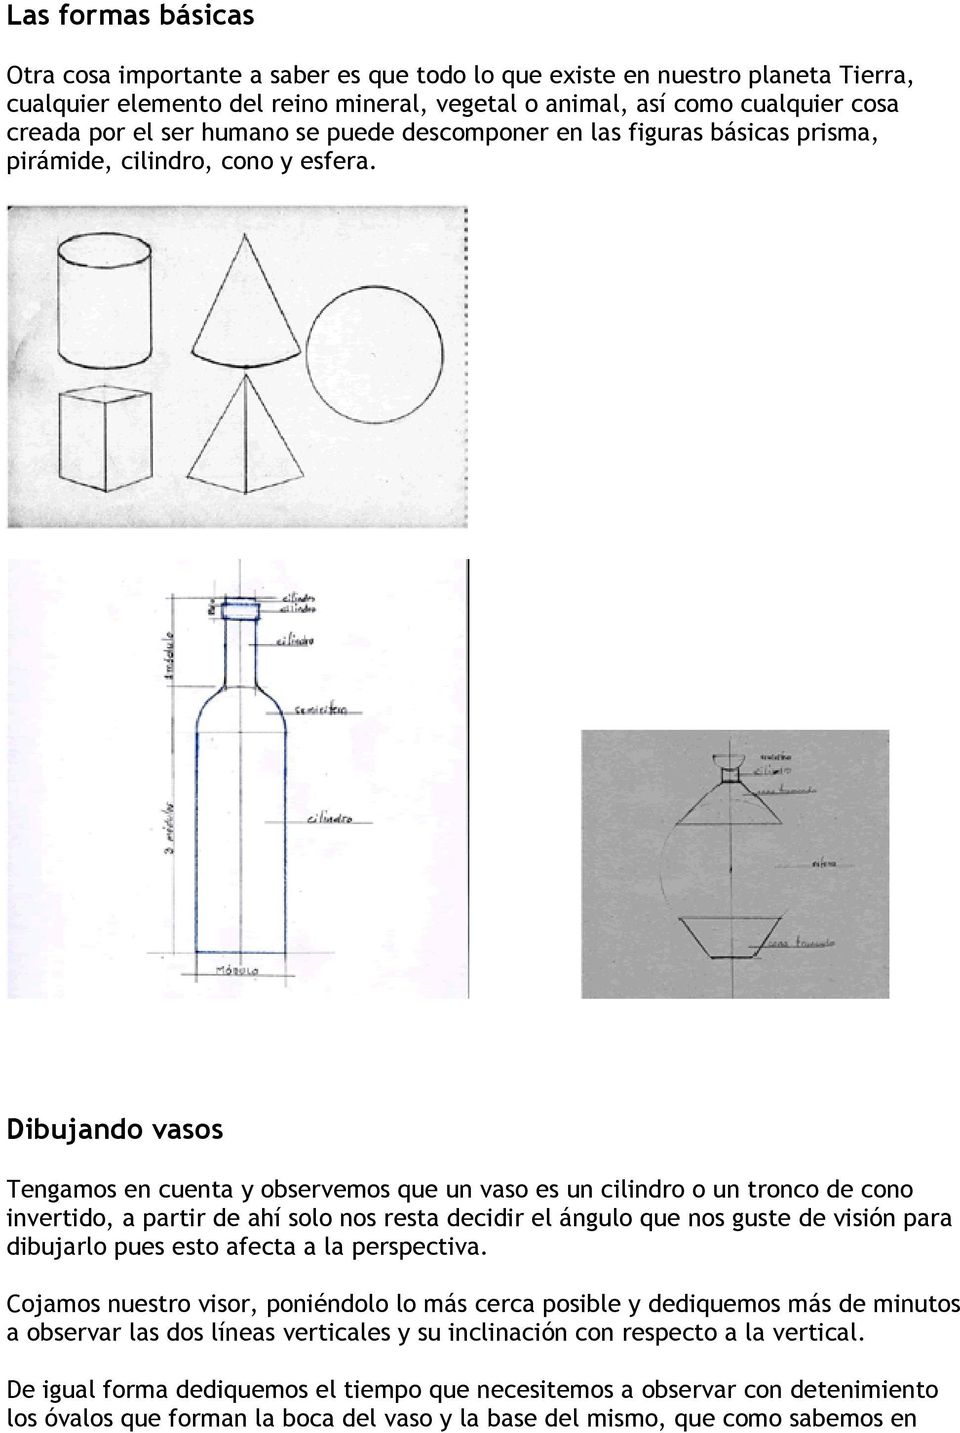 Dibujando vasos Tengamos en cuenta y observemos que un vaso es un cilindro o un tronco de cono invertido, a partir de ahí solo nos resta decidir el ángulo que nos guste de visión para dibujarlo pues